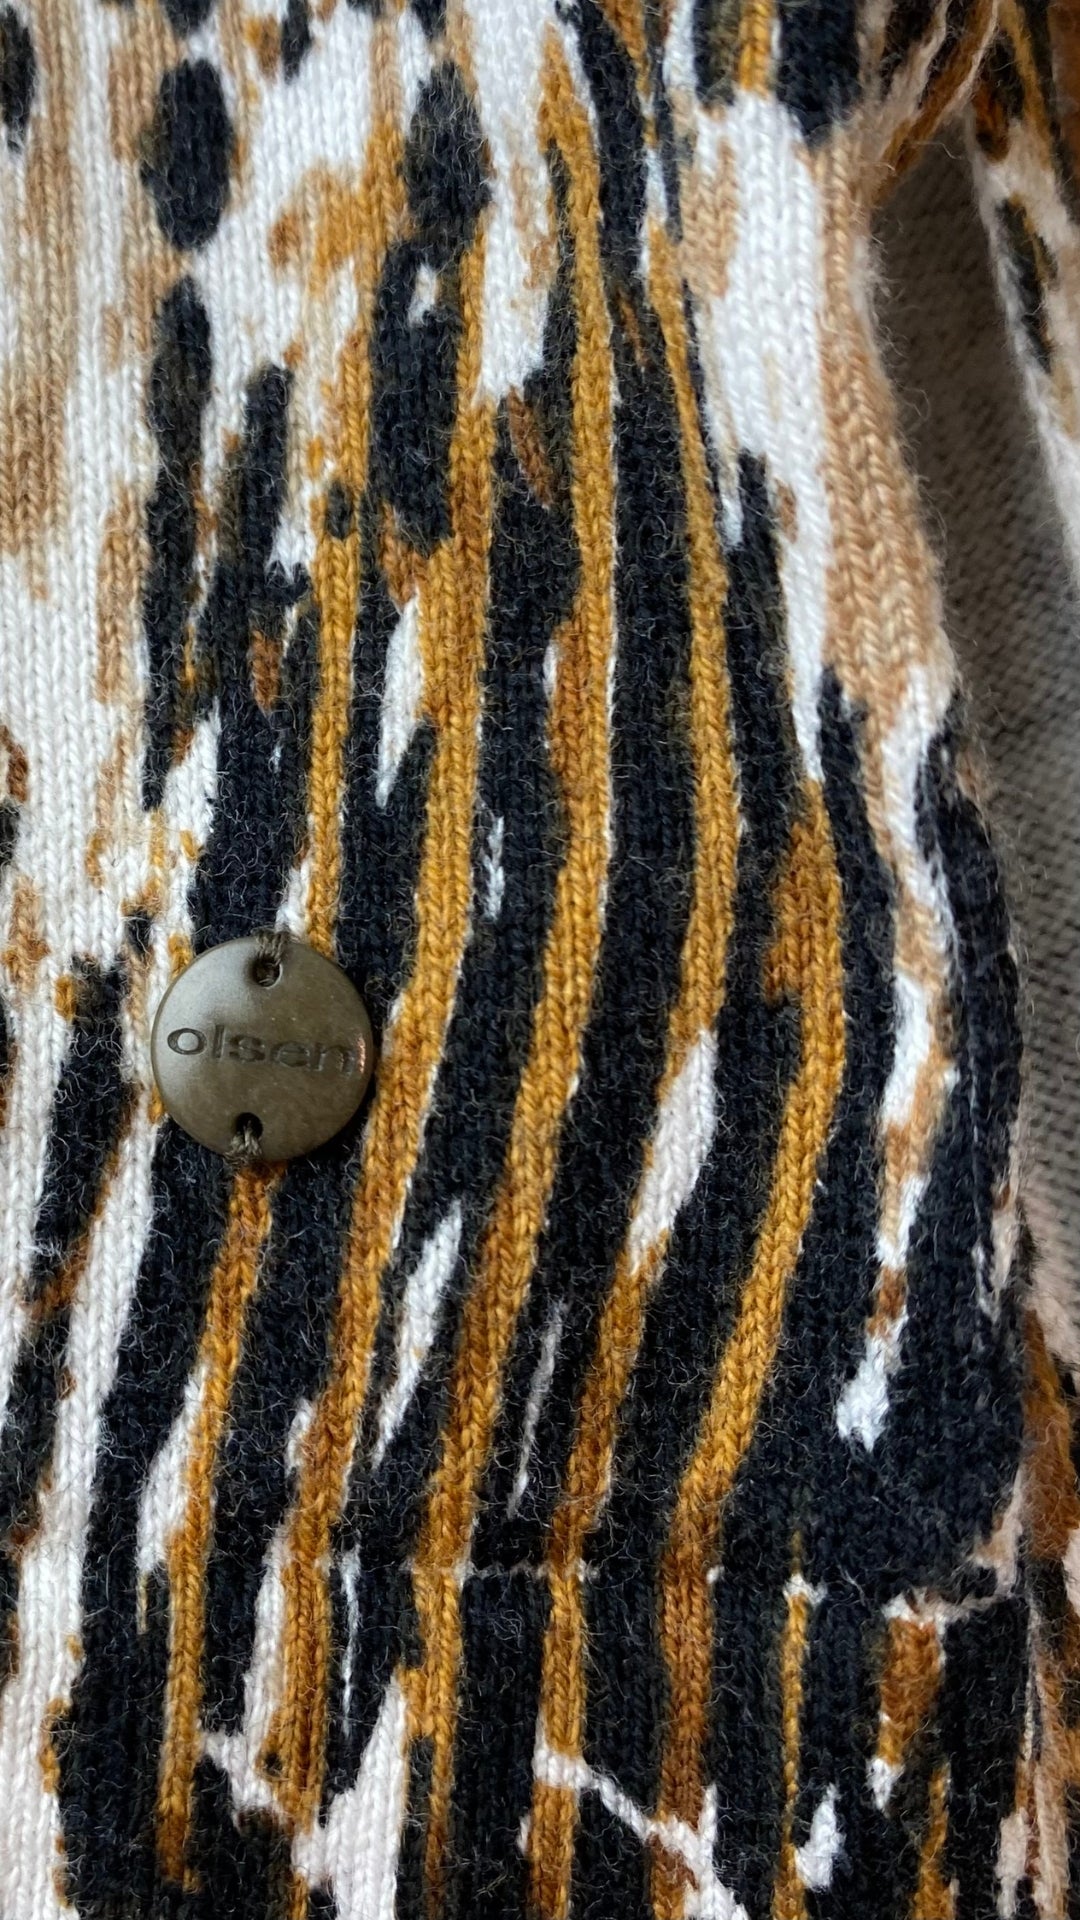 Chandail tricot col v motif style léopard Olsen, taille s/m. Vue du détail métallique gravé au nom de la marque.